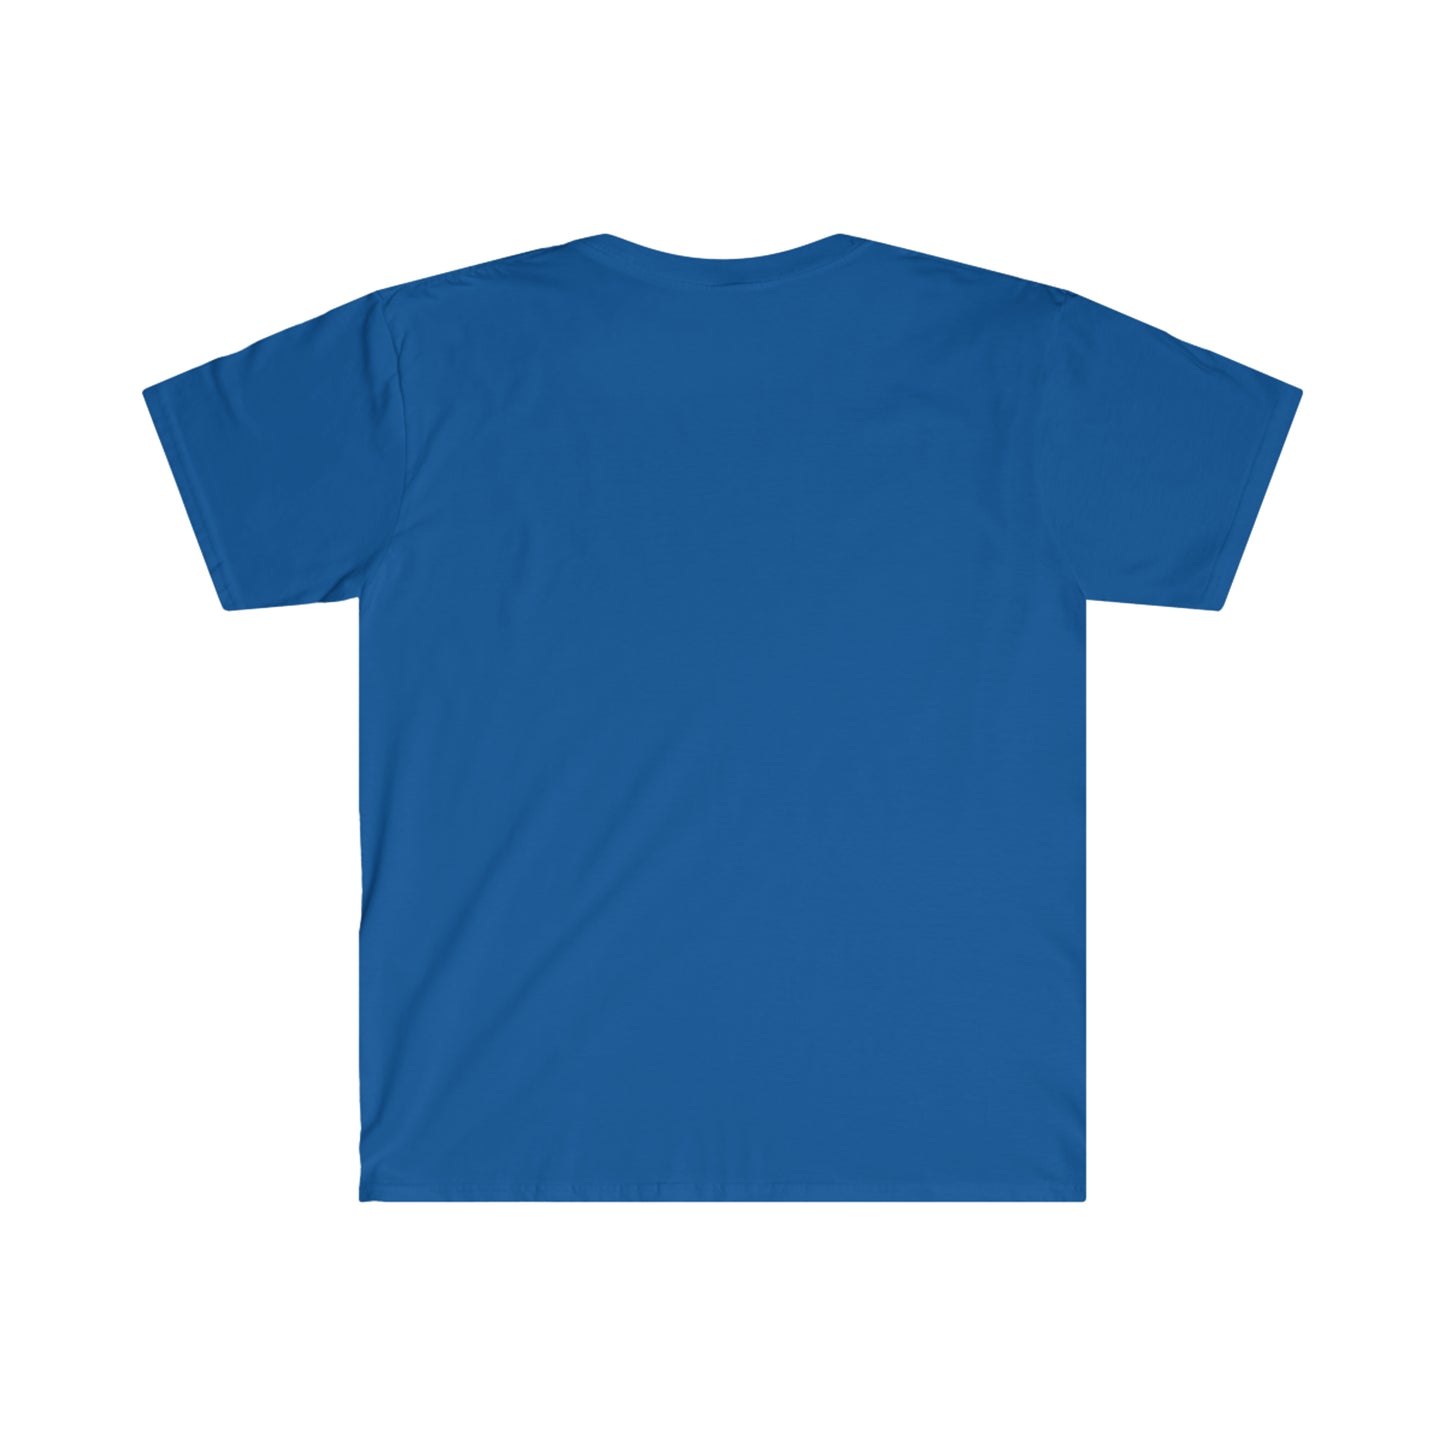 DFW Sigs - T-Shirt